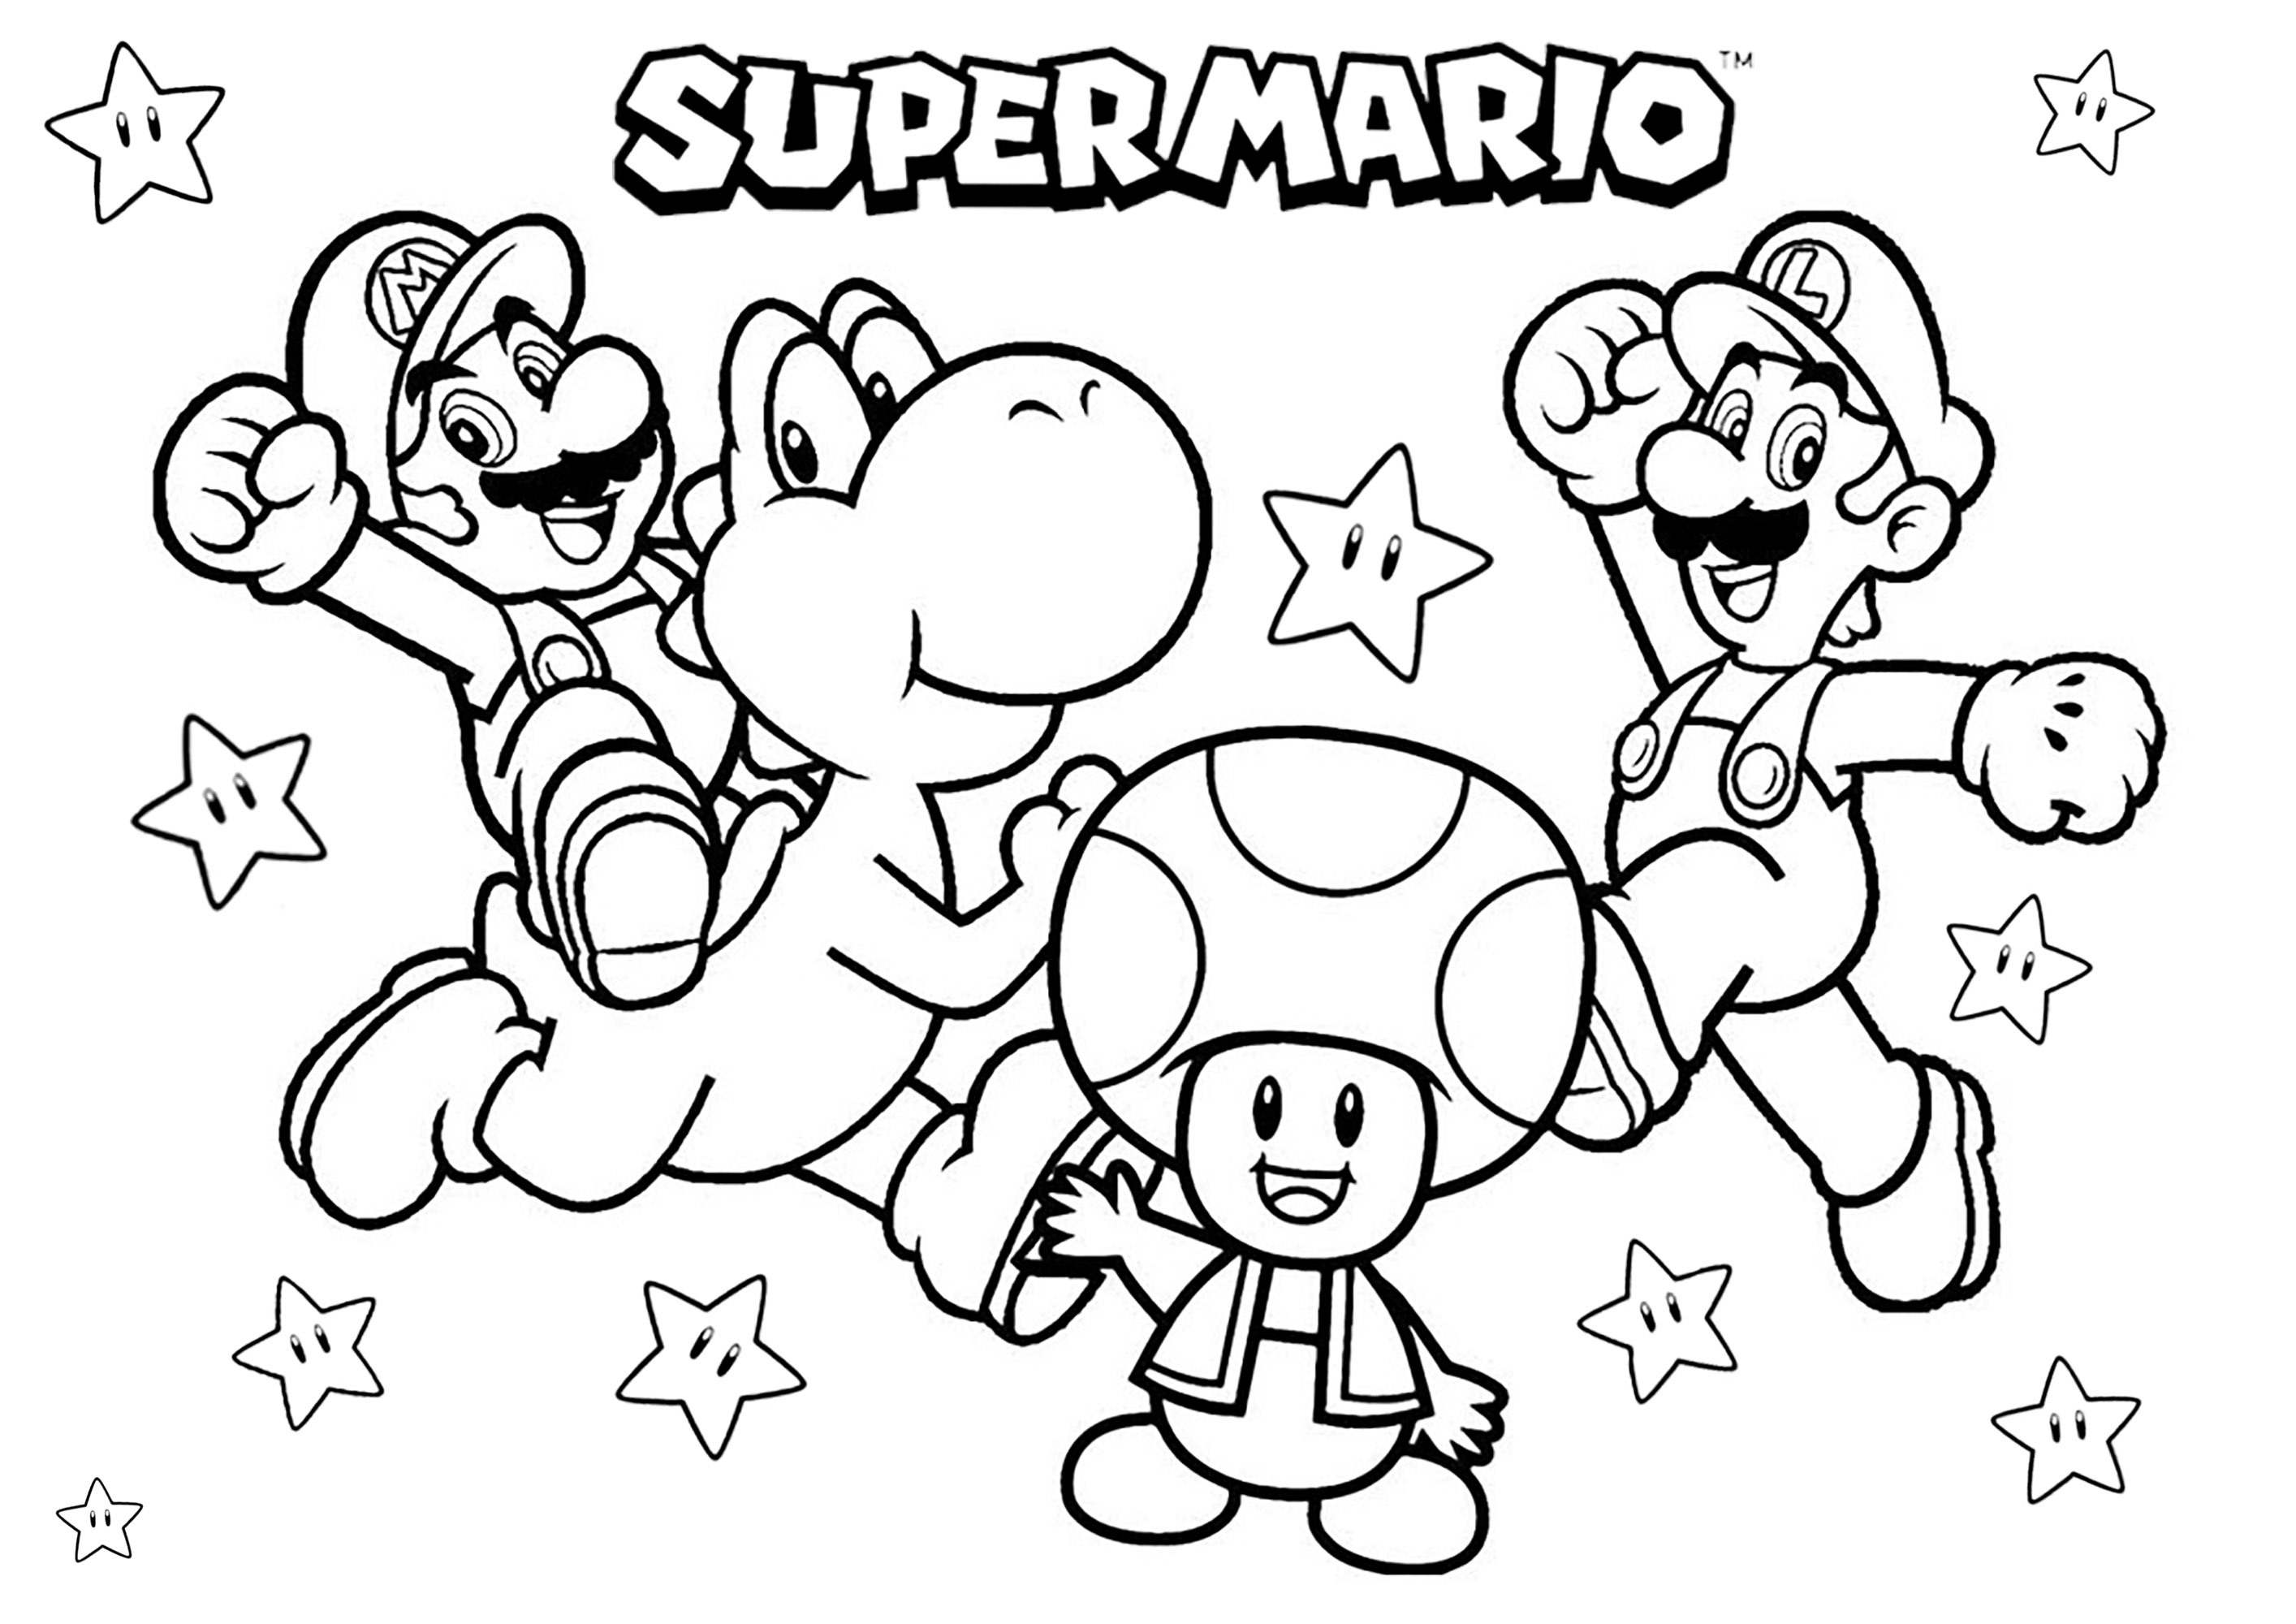 Mario, Luigi, Yoshi e Toad com muitas estrelas. Um livro para colorir com algumas das principais personagens de Super Mario Bros: os irmãos Mario e Luigi, o dinossauro Yoshi e o cogumelo Toad!